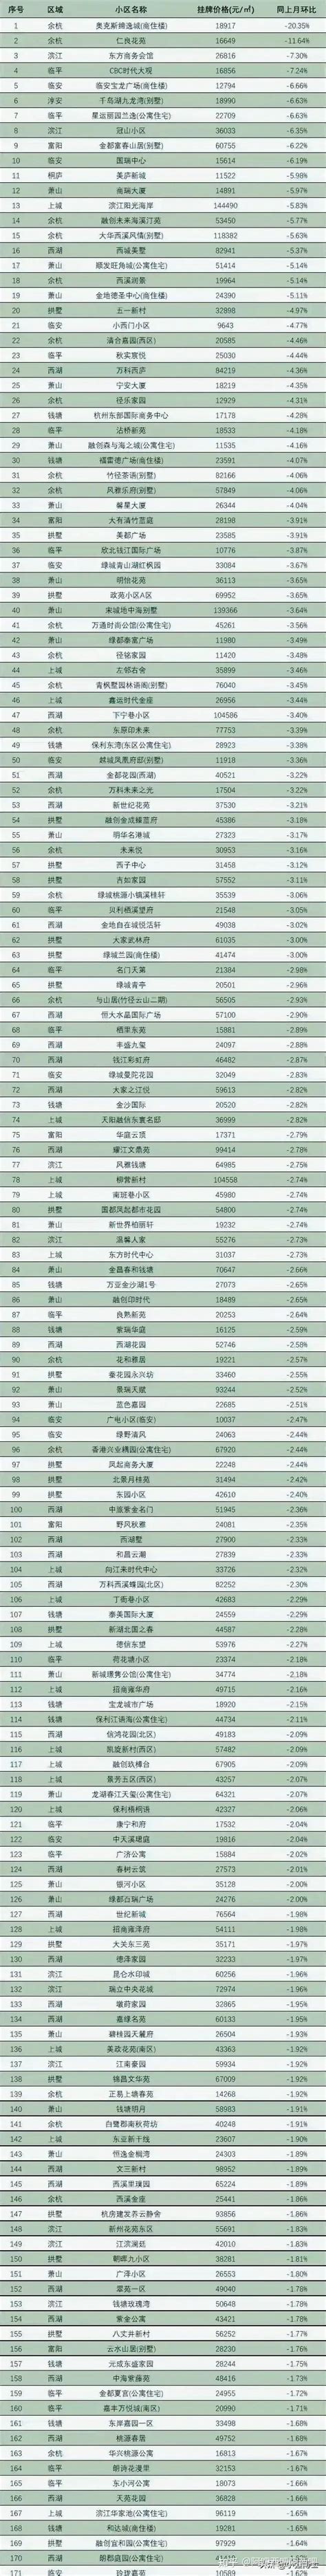 杭州房价跌幅最猛的291个小区